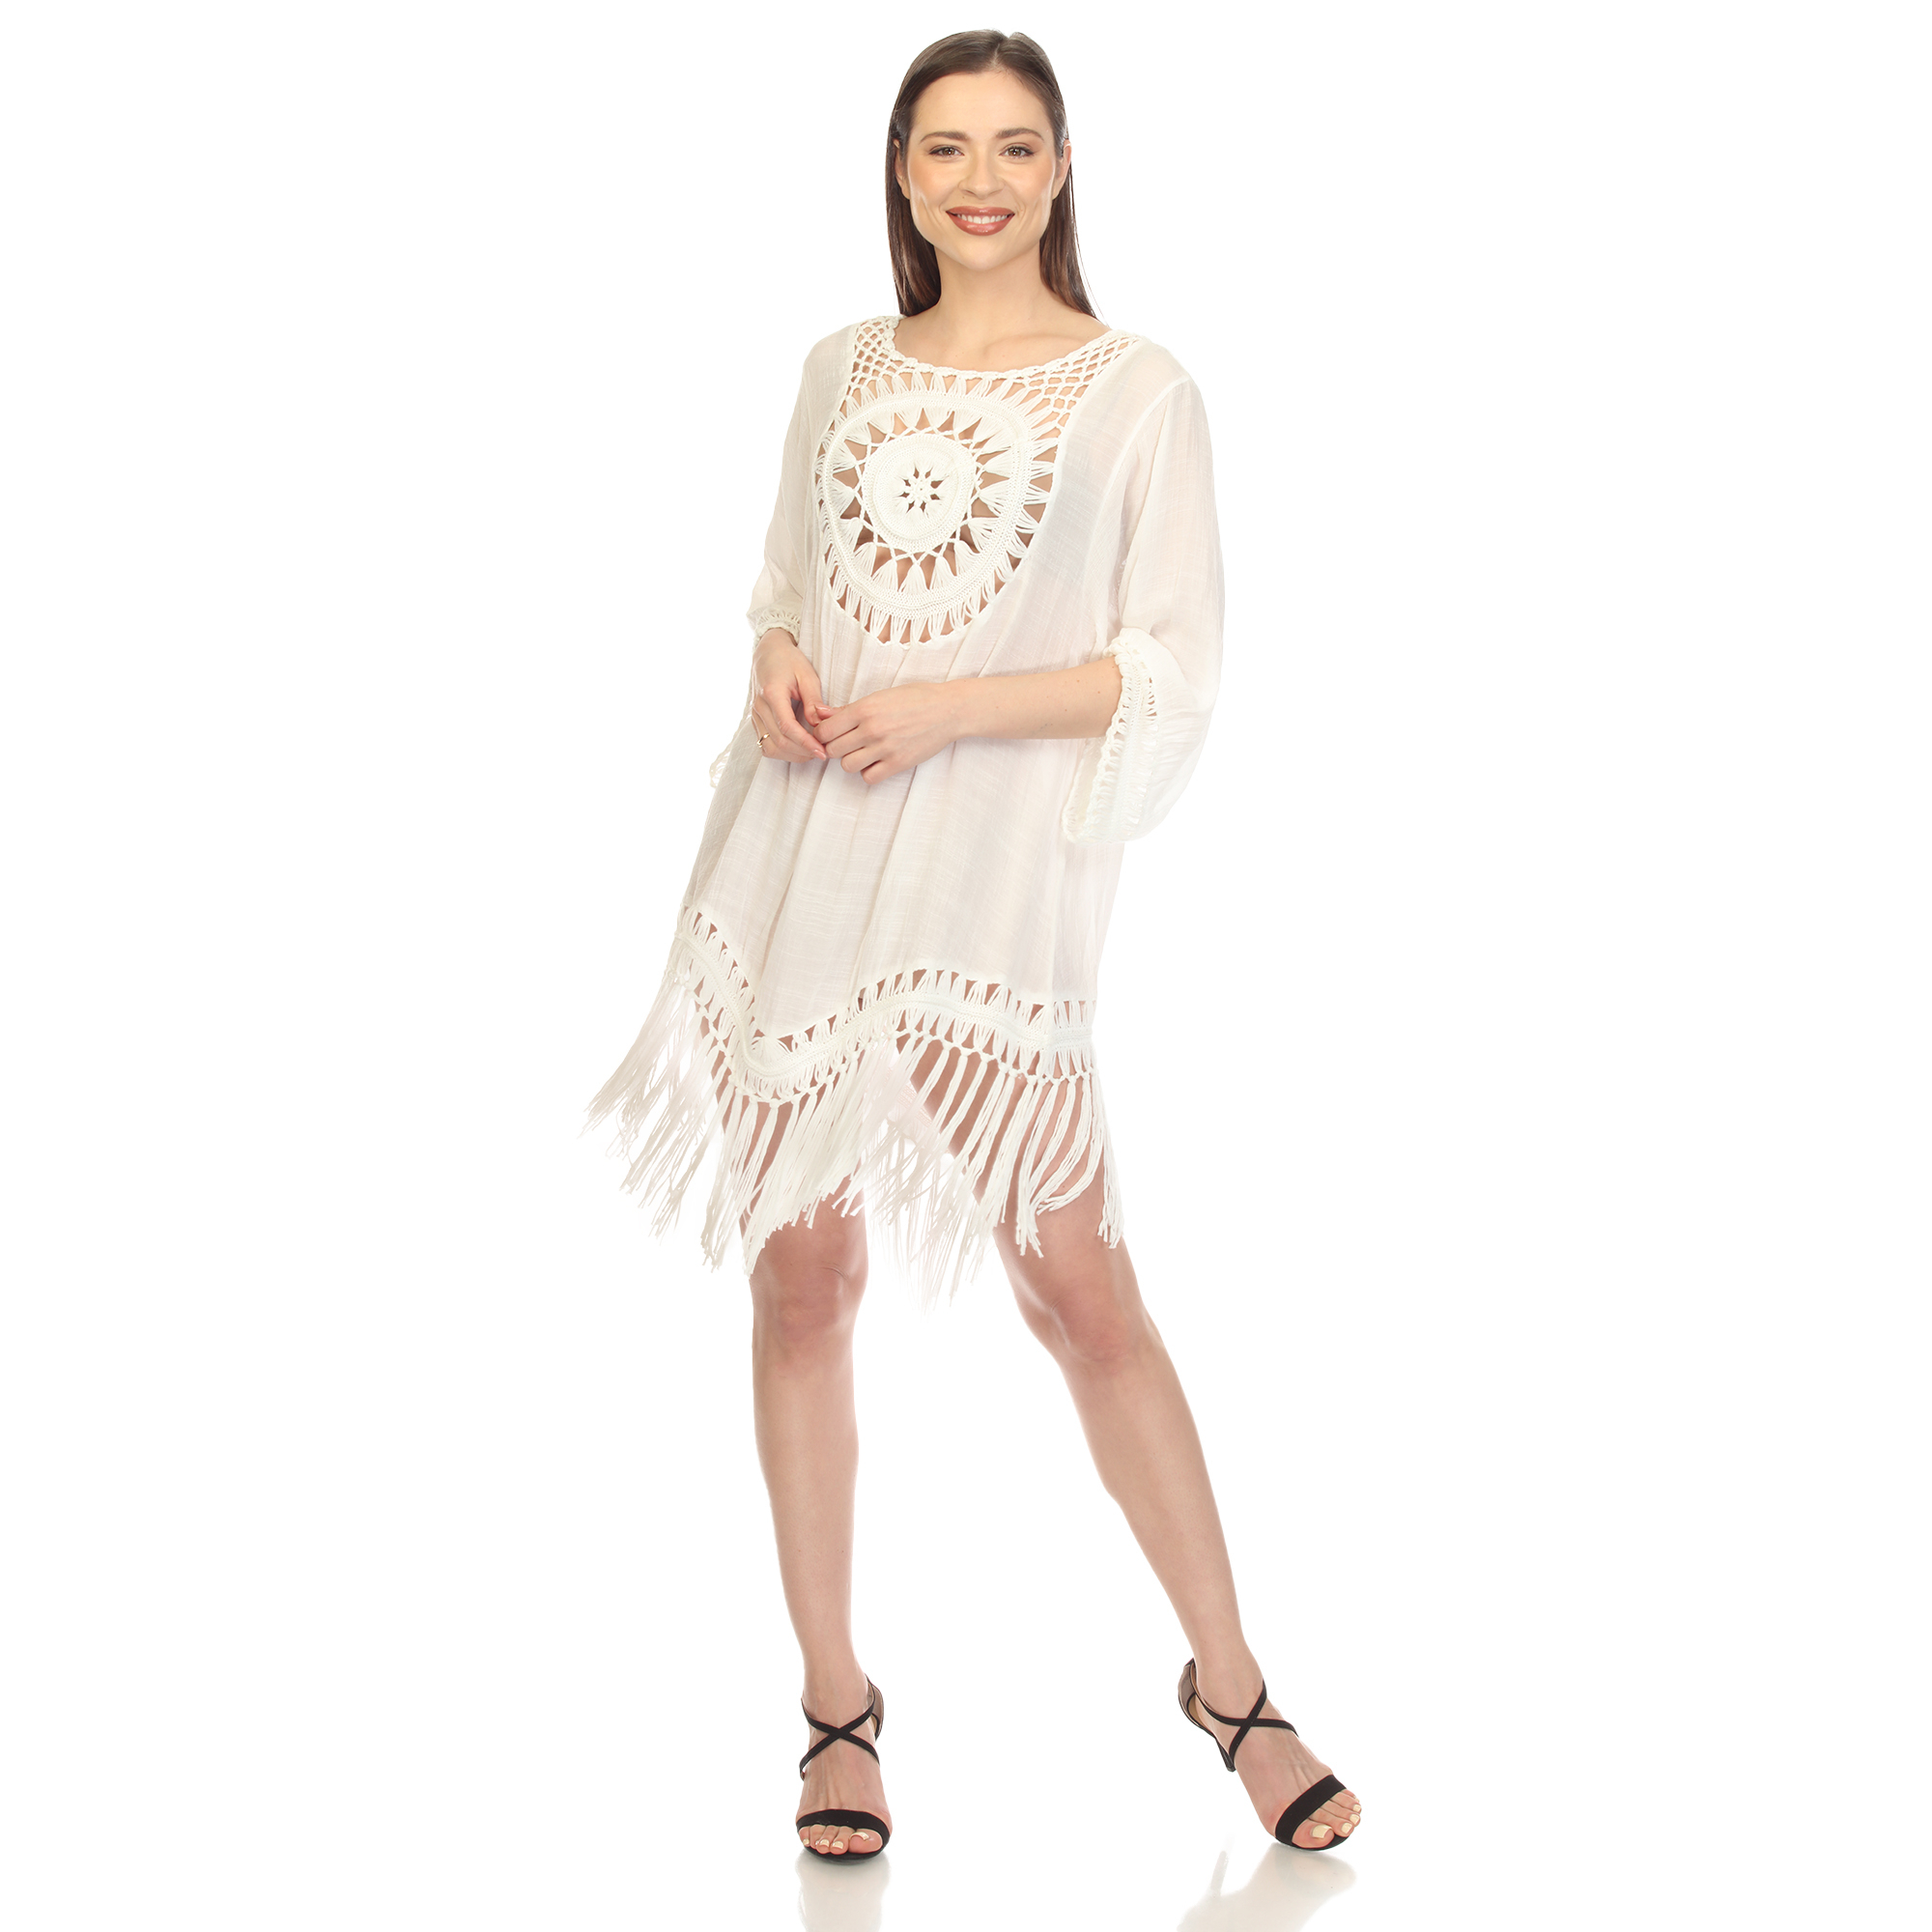 White Mark Women's Sheer Crochet Fringe Cover-Up - White, One Size (Missy)